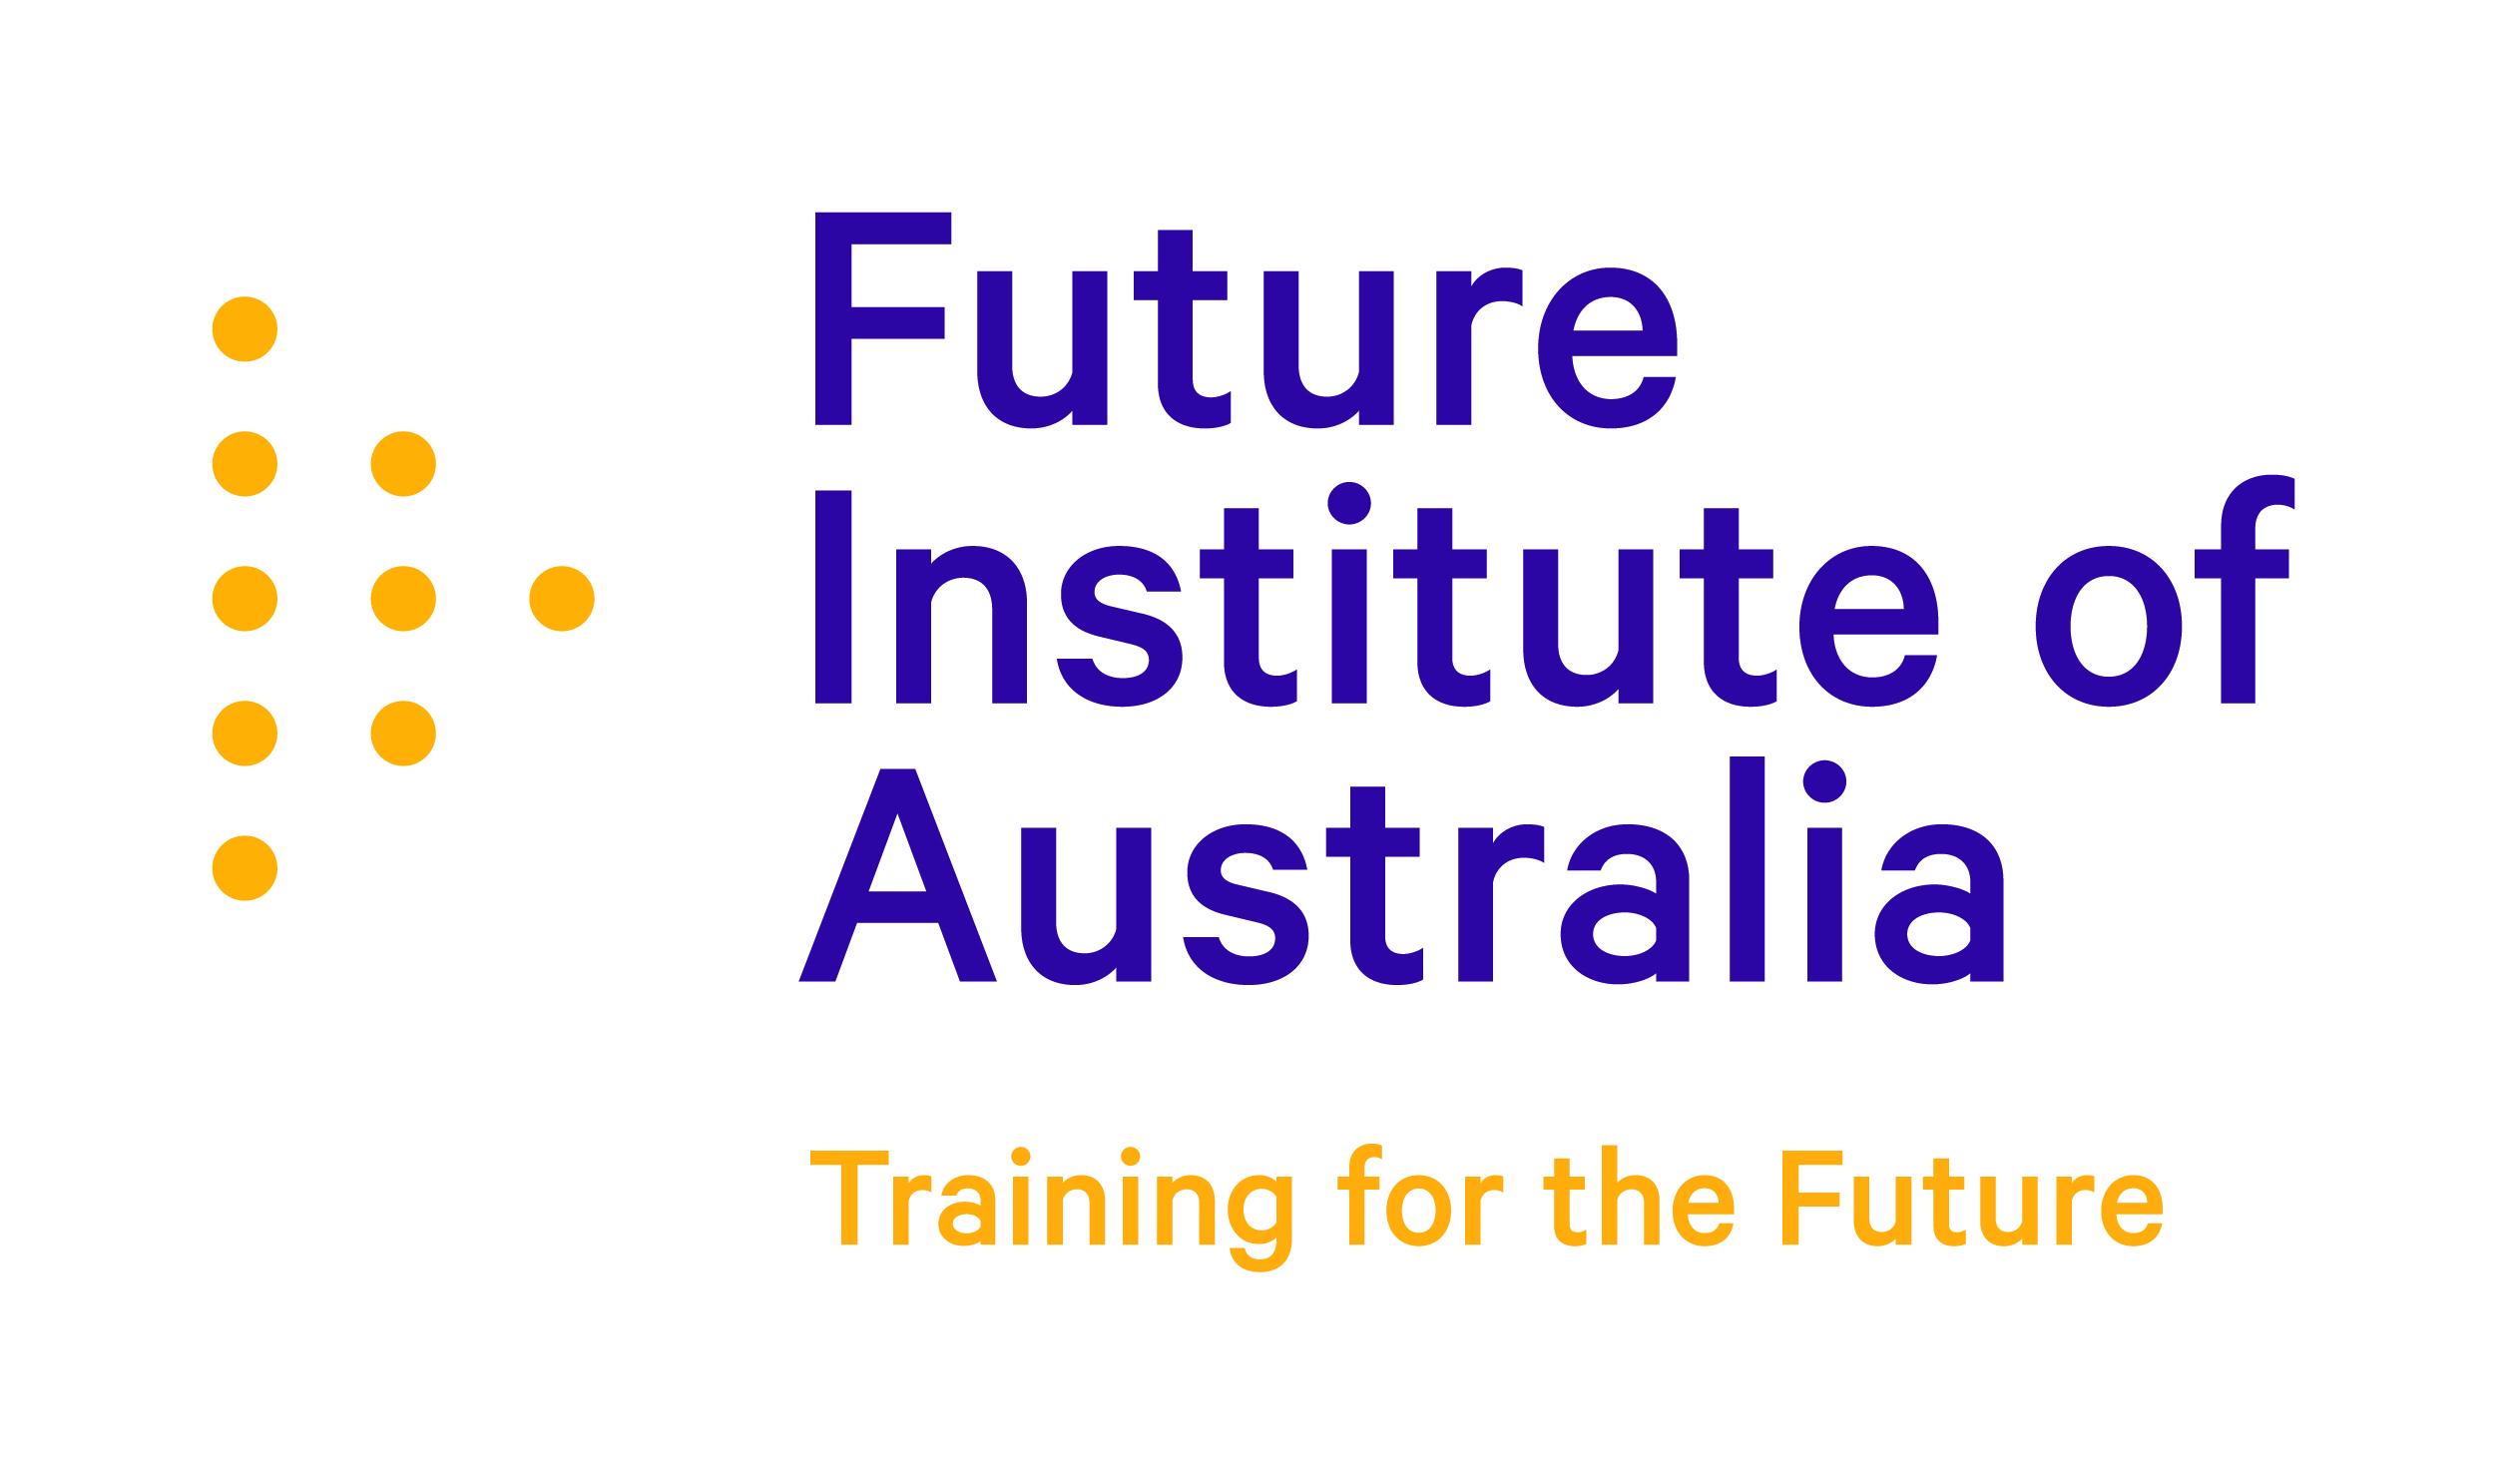 Future Institute of Australia